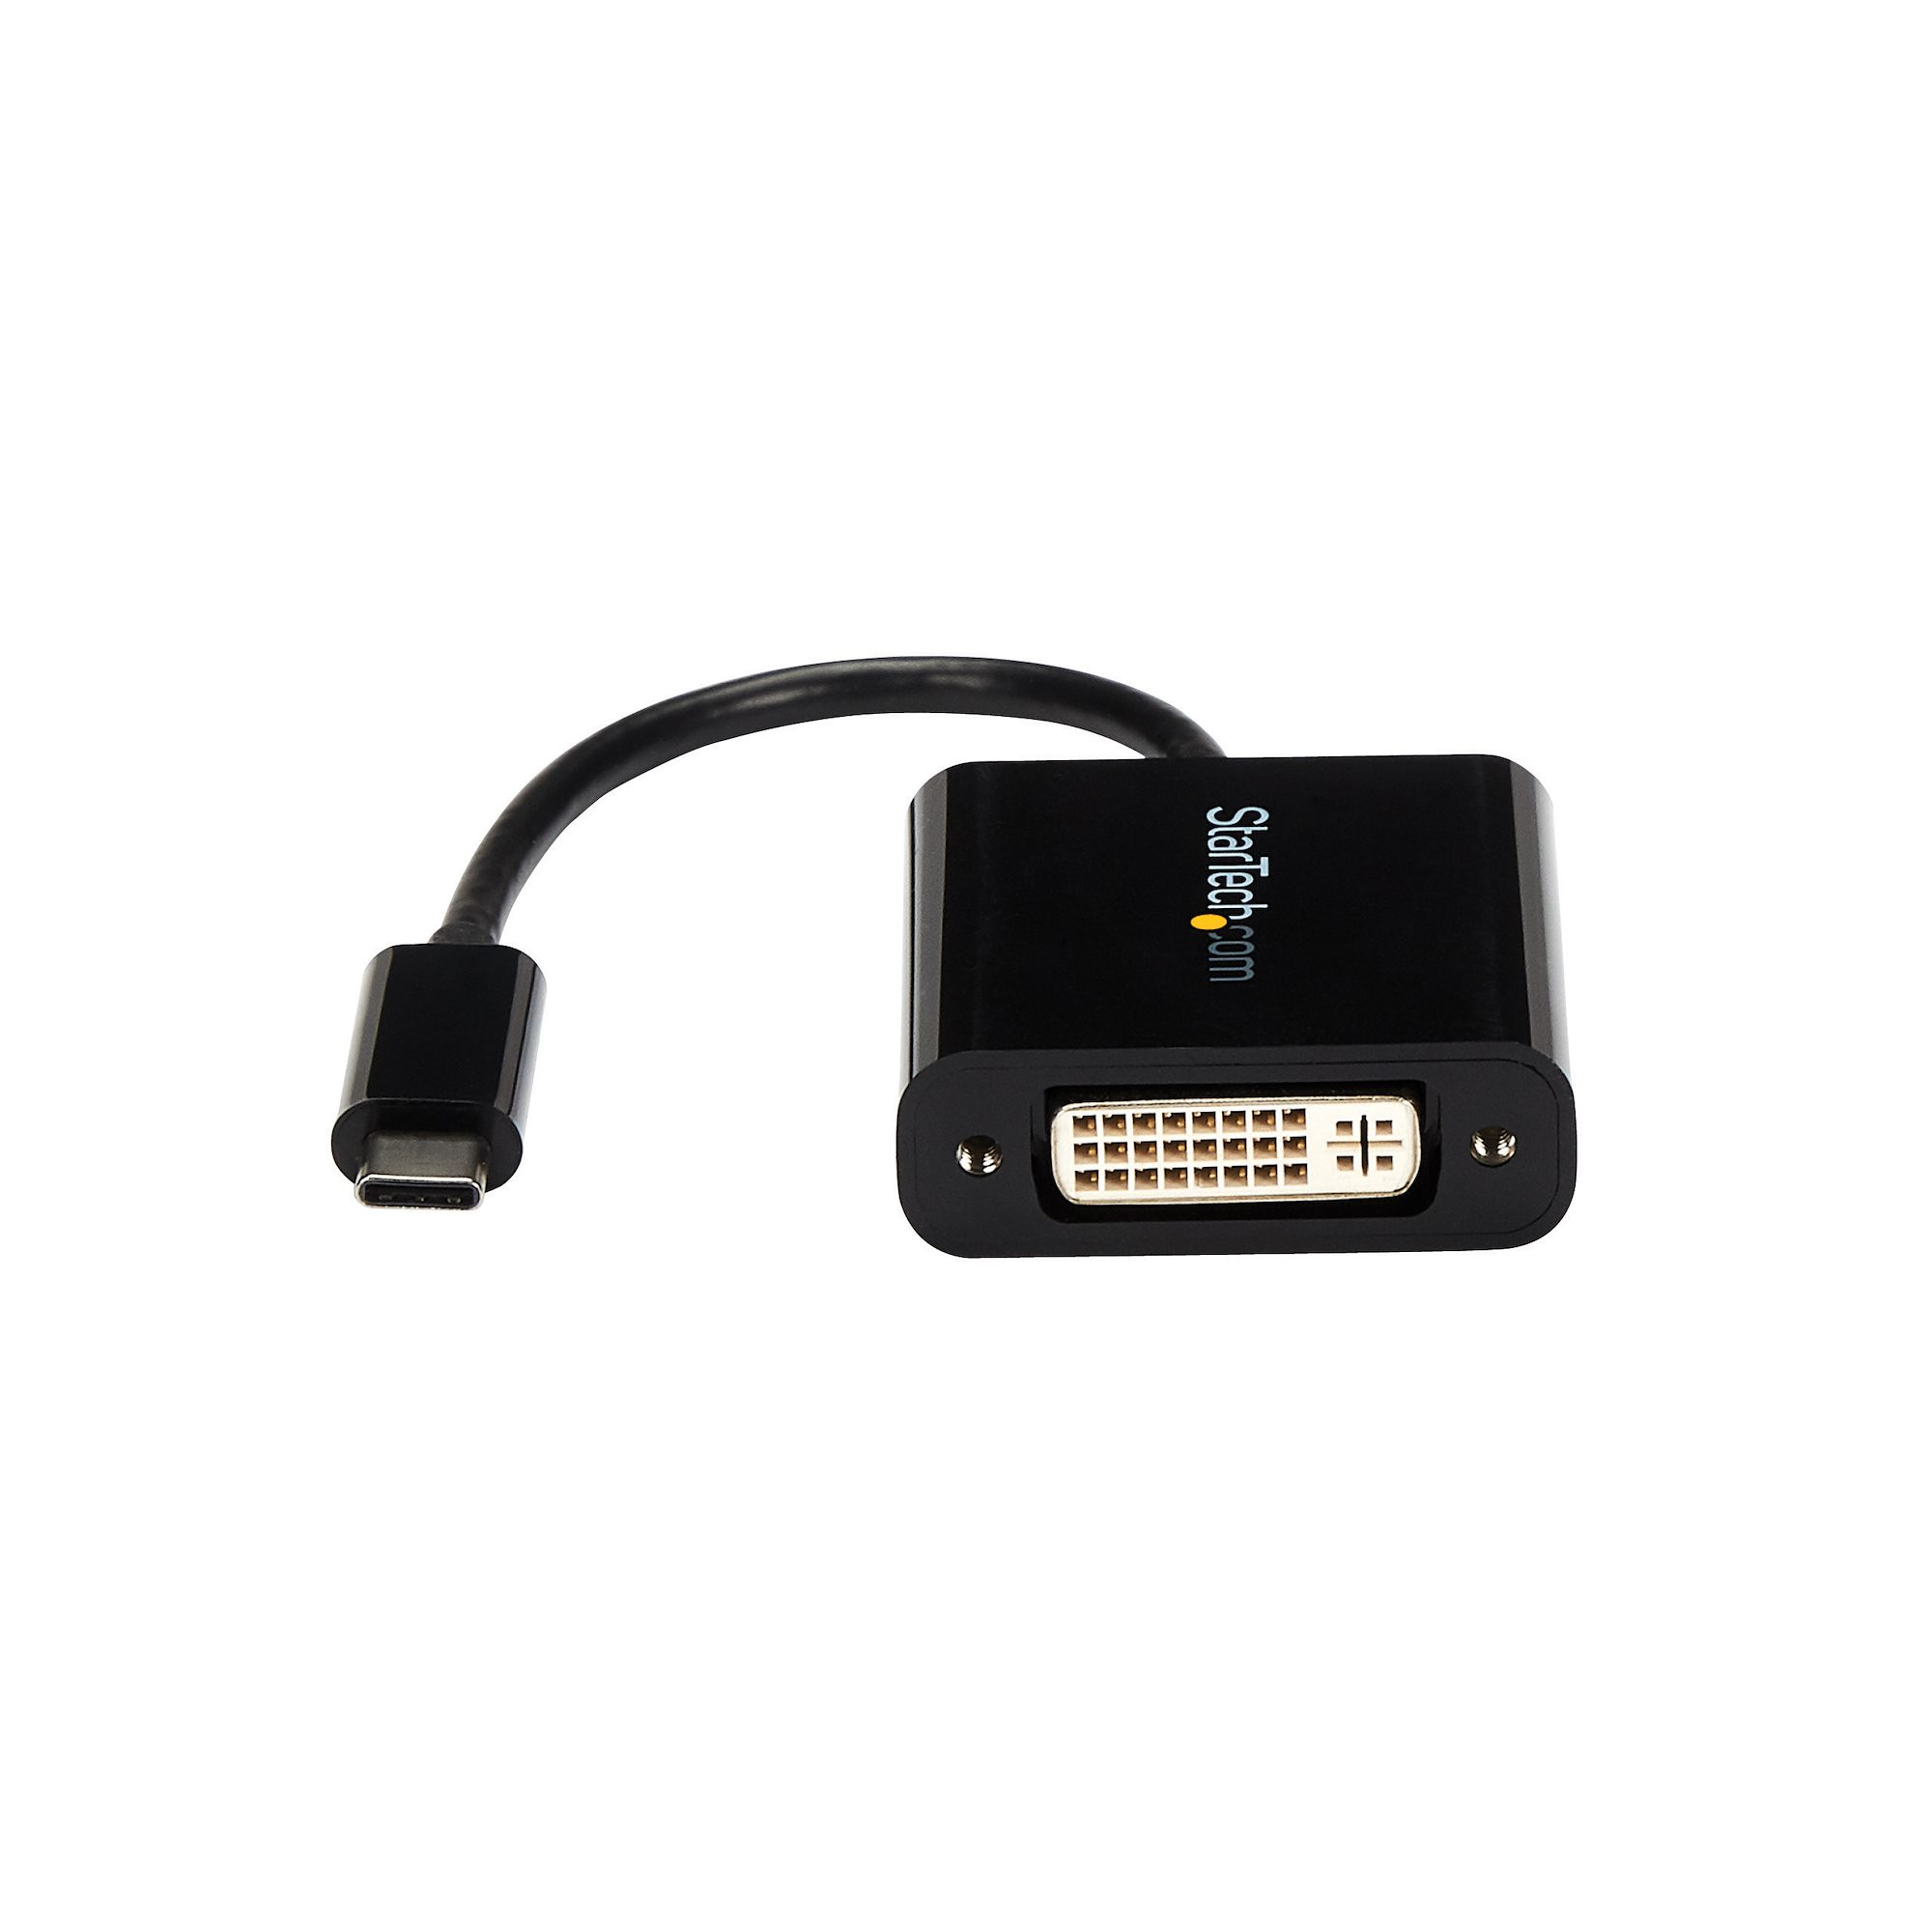 StarTech.com USB-C auf DVI Adapter - USB Type-C DVI Konverter für MacBook, ChromeBook Pixel oder andere USB-C Geräte mit DP über USB C